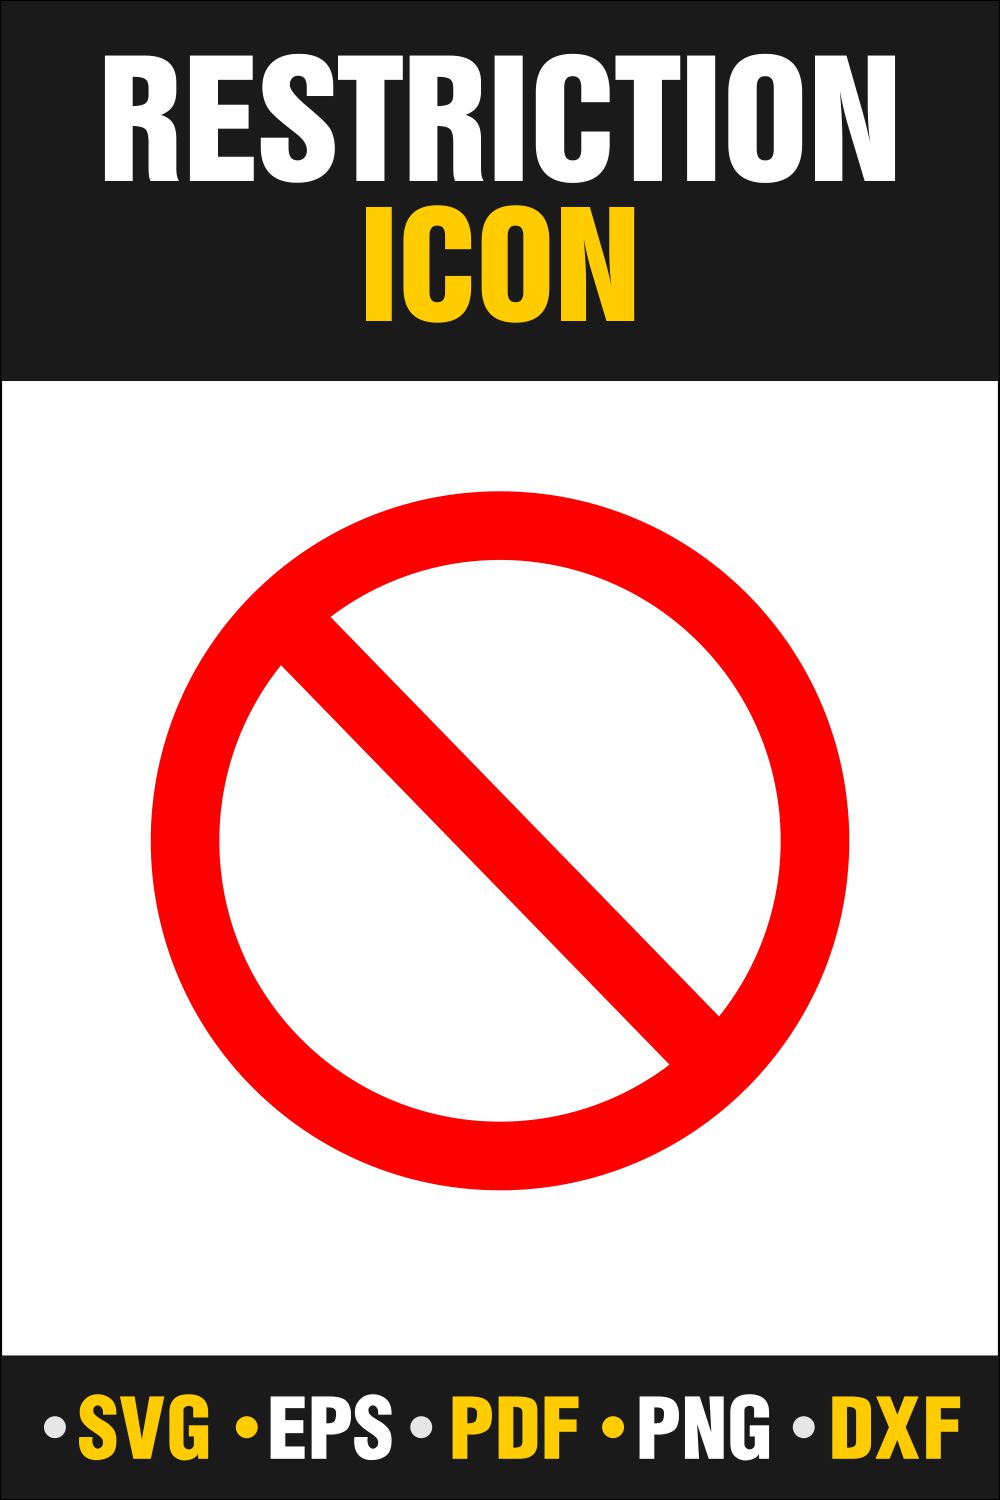 Wonderful image restriction icon